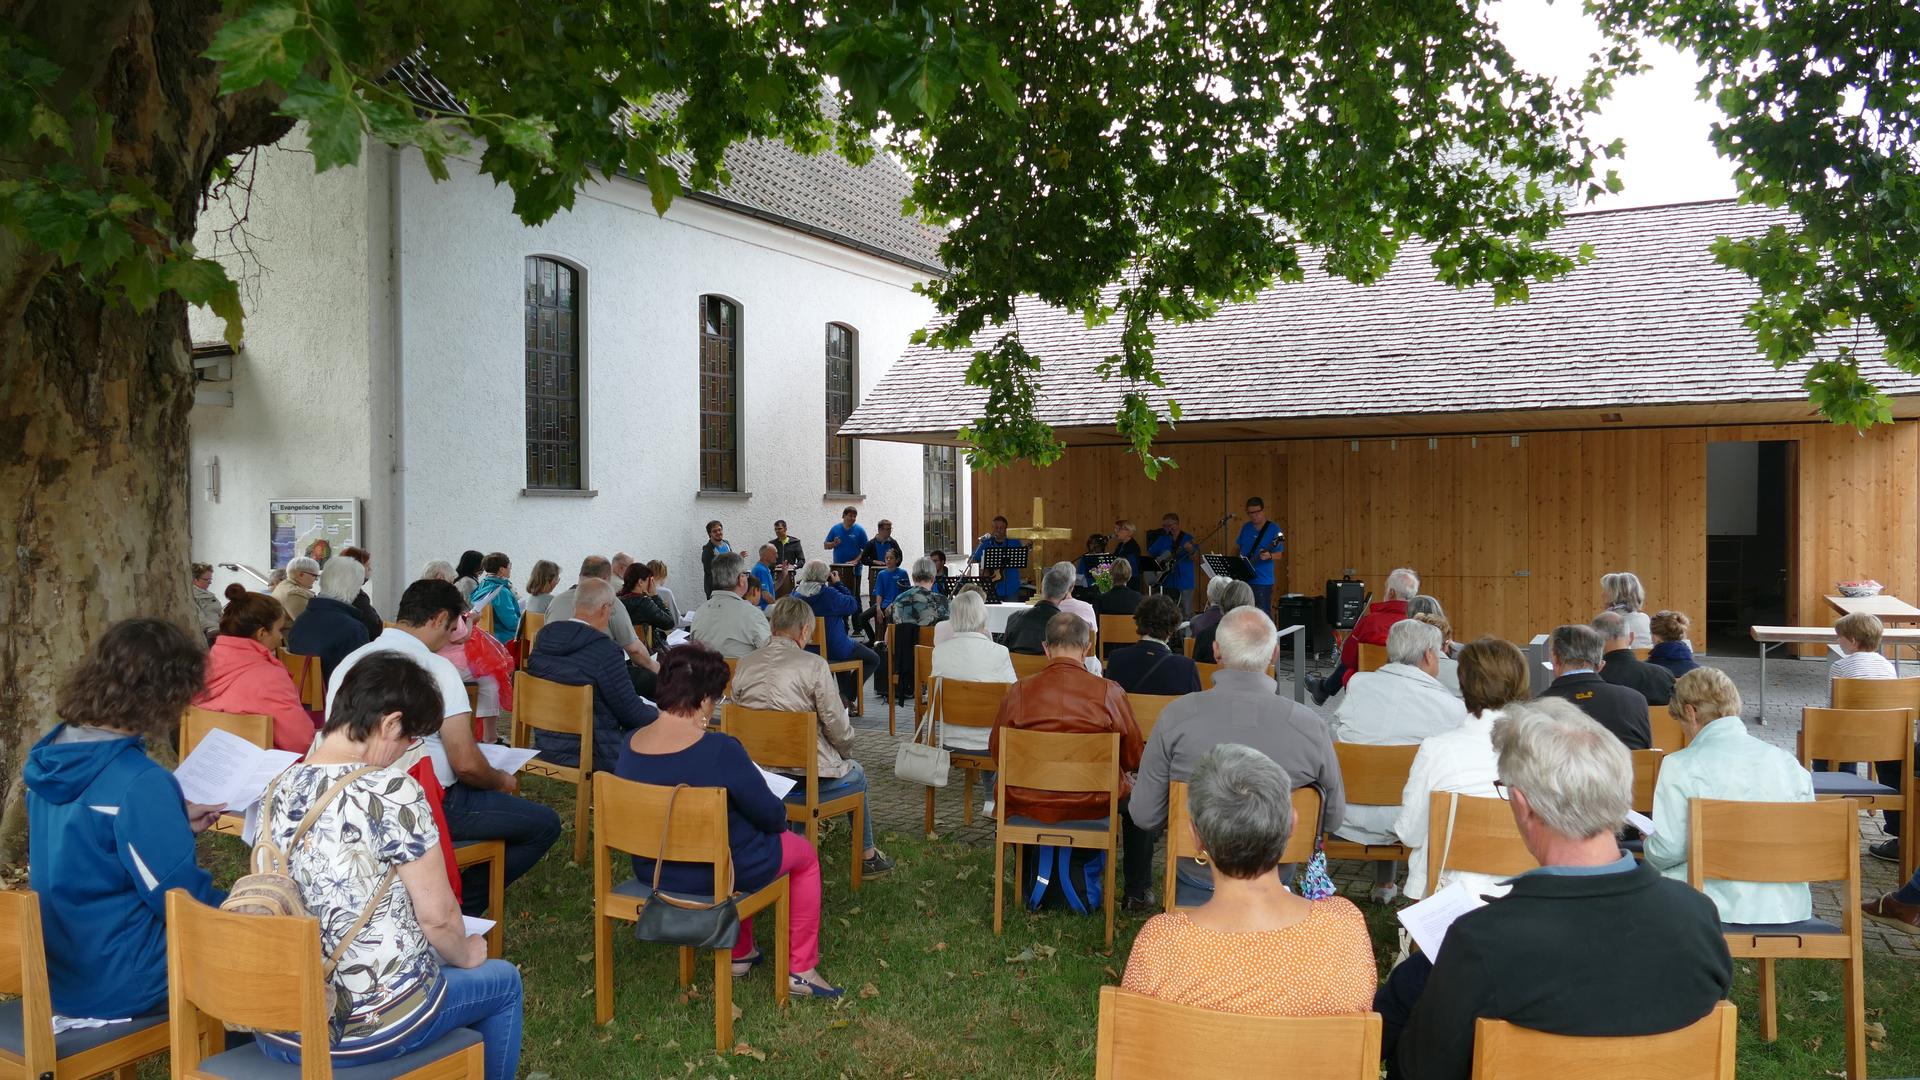 Radfahrerkirche Gaggenau Hörden. Open Air Gottesdienst September 2020. Mehrere Menschen sitzen auf Stühlen auf einer Wiese unter einem Baum.